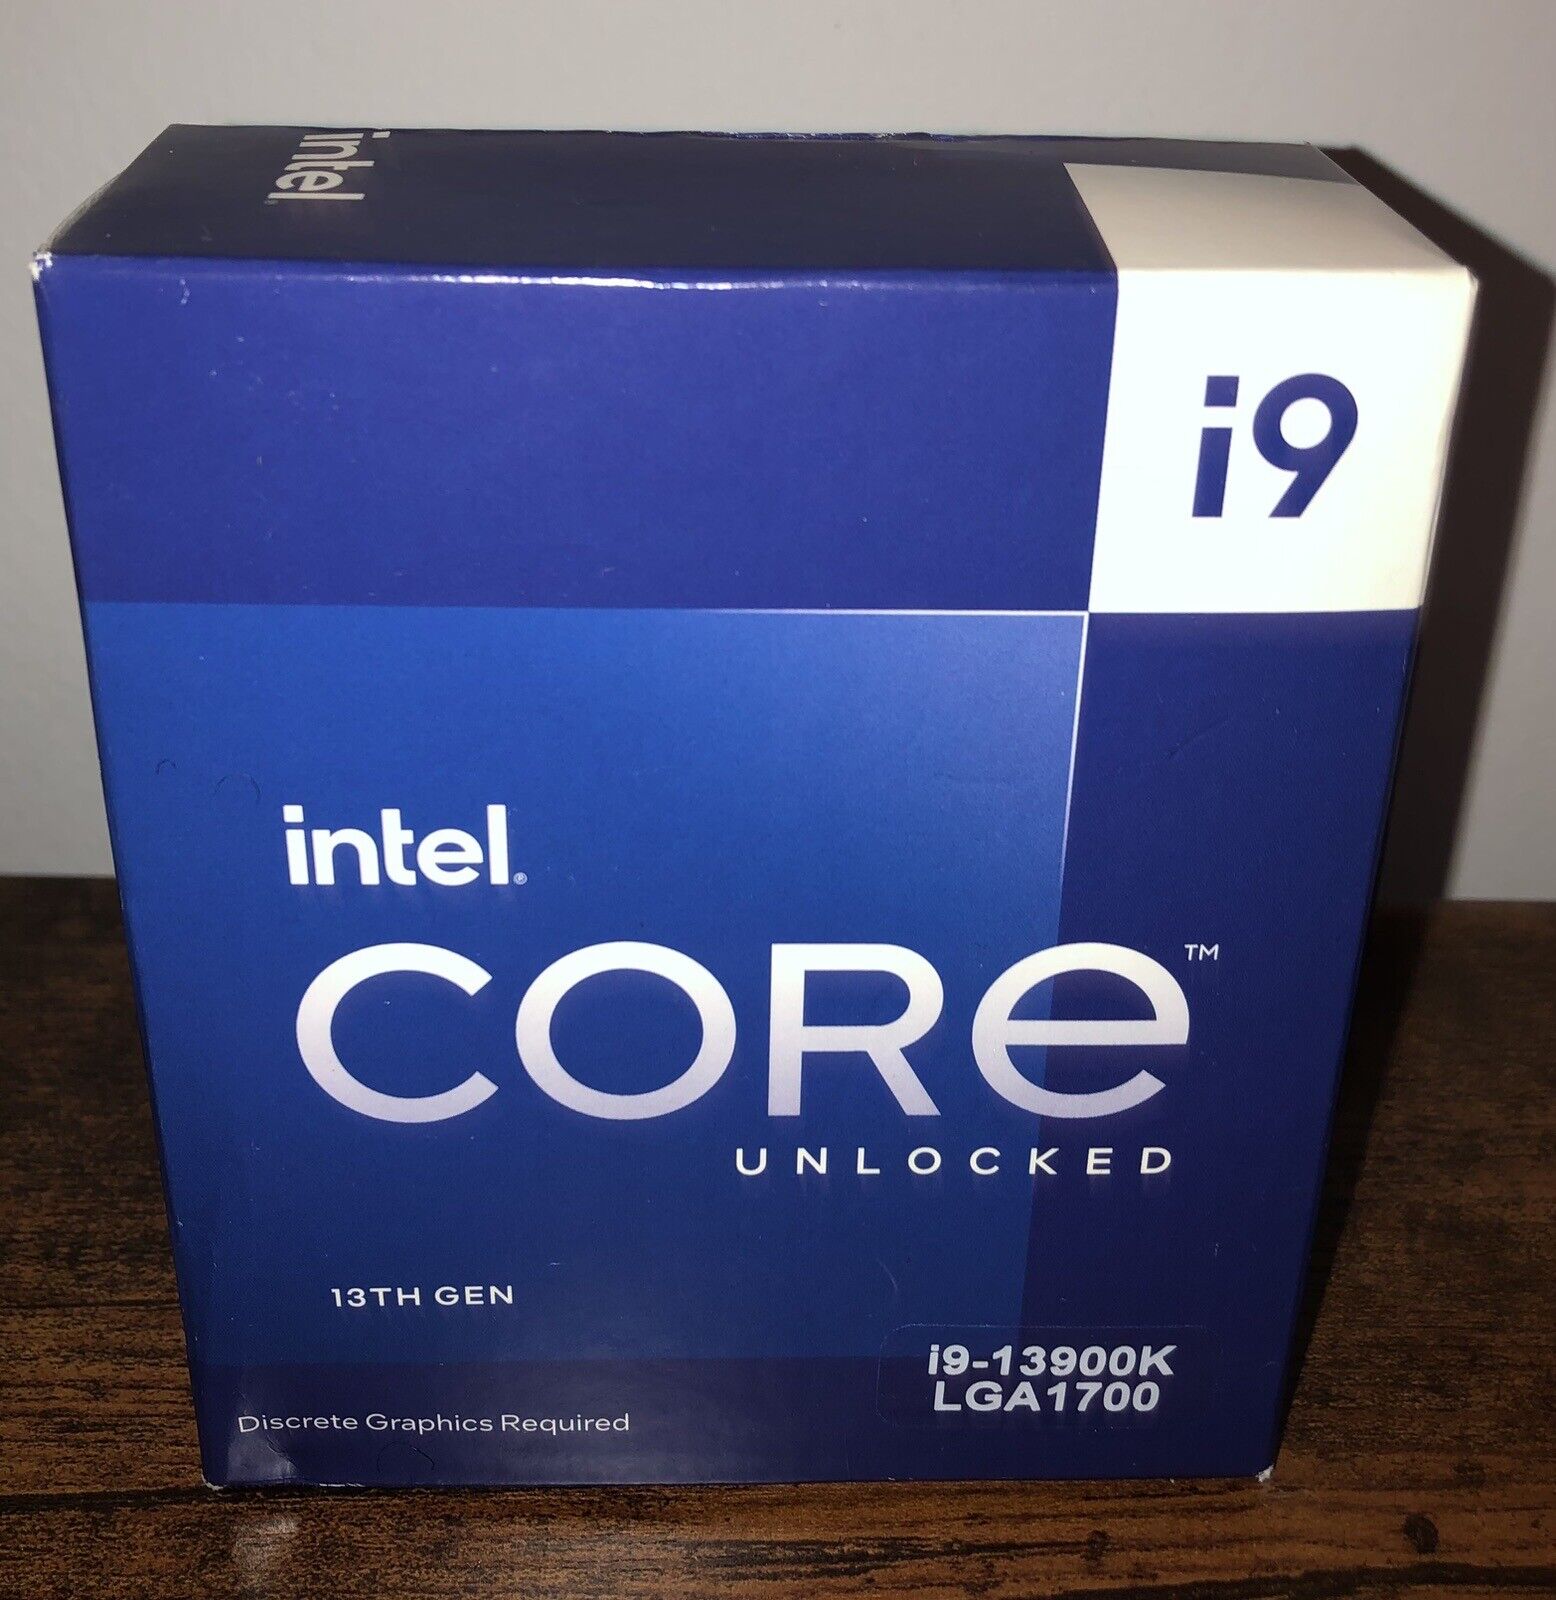 Intel Core i9-13900K Processor (5.8 GHz, 24 Cores, LGA 1700) Box - BX8071513900K